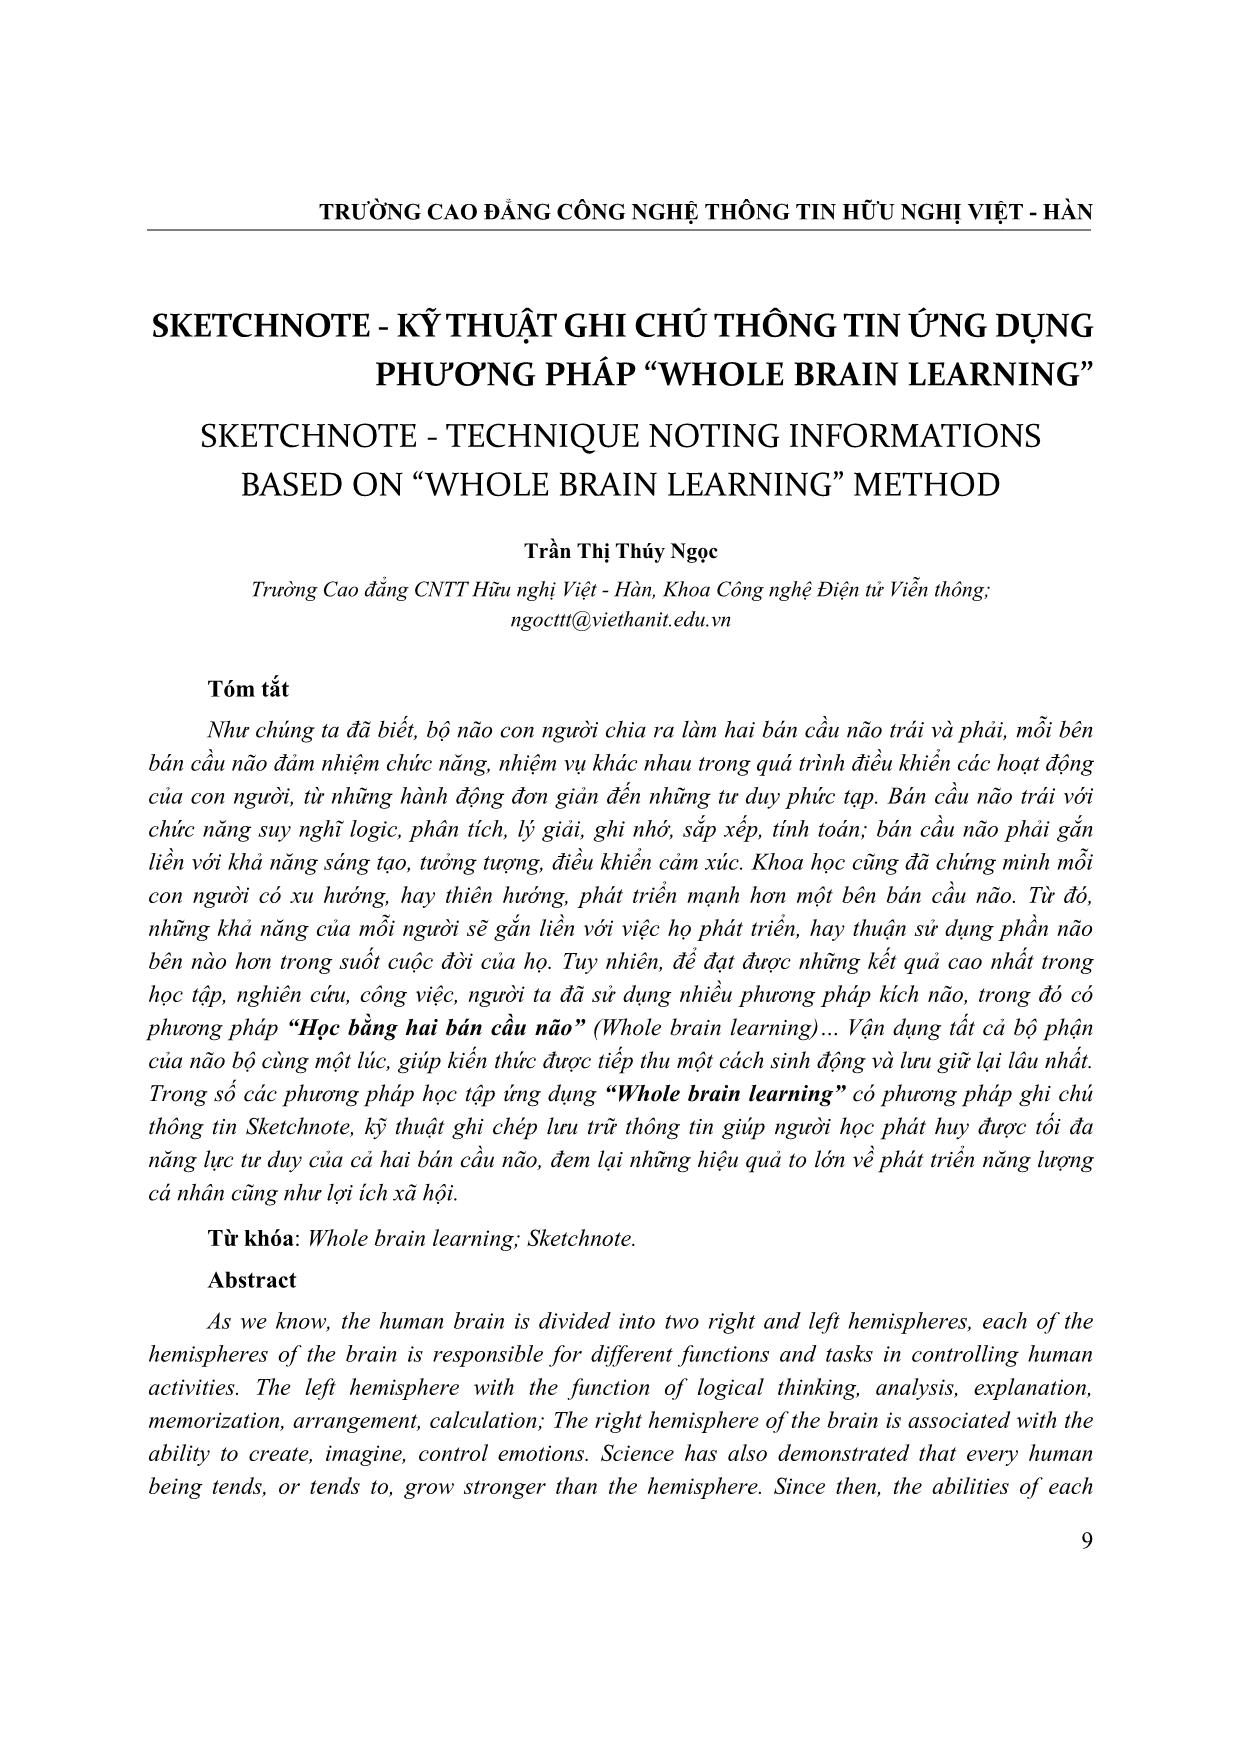 Sketchnote - Kỹ thuật ghi chú thông tin ứng dụng phương pháp “Whole brain learning” trang 3